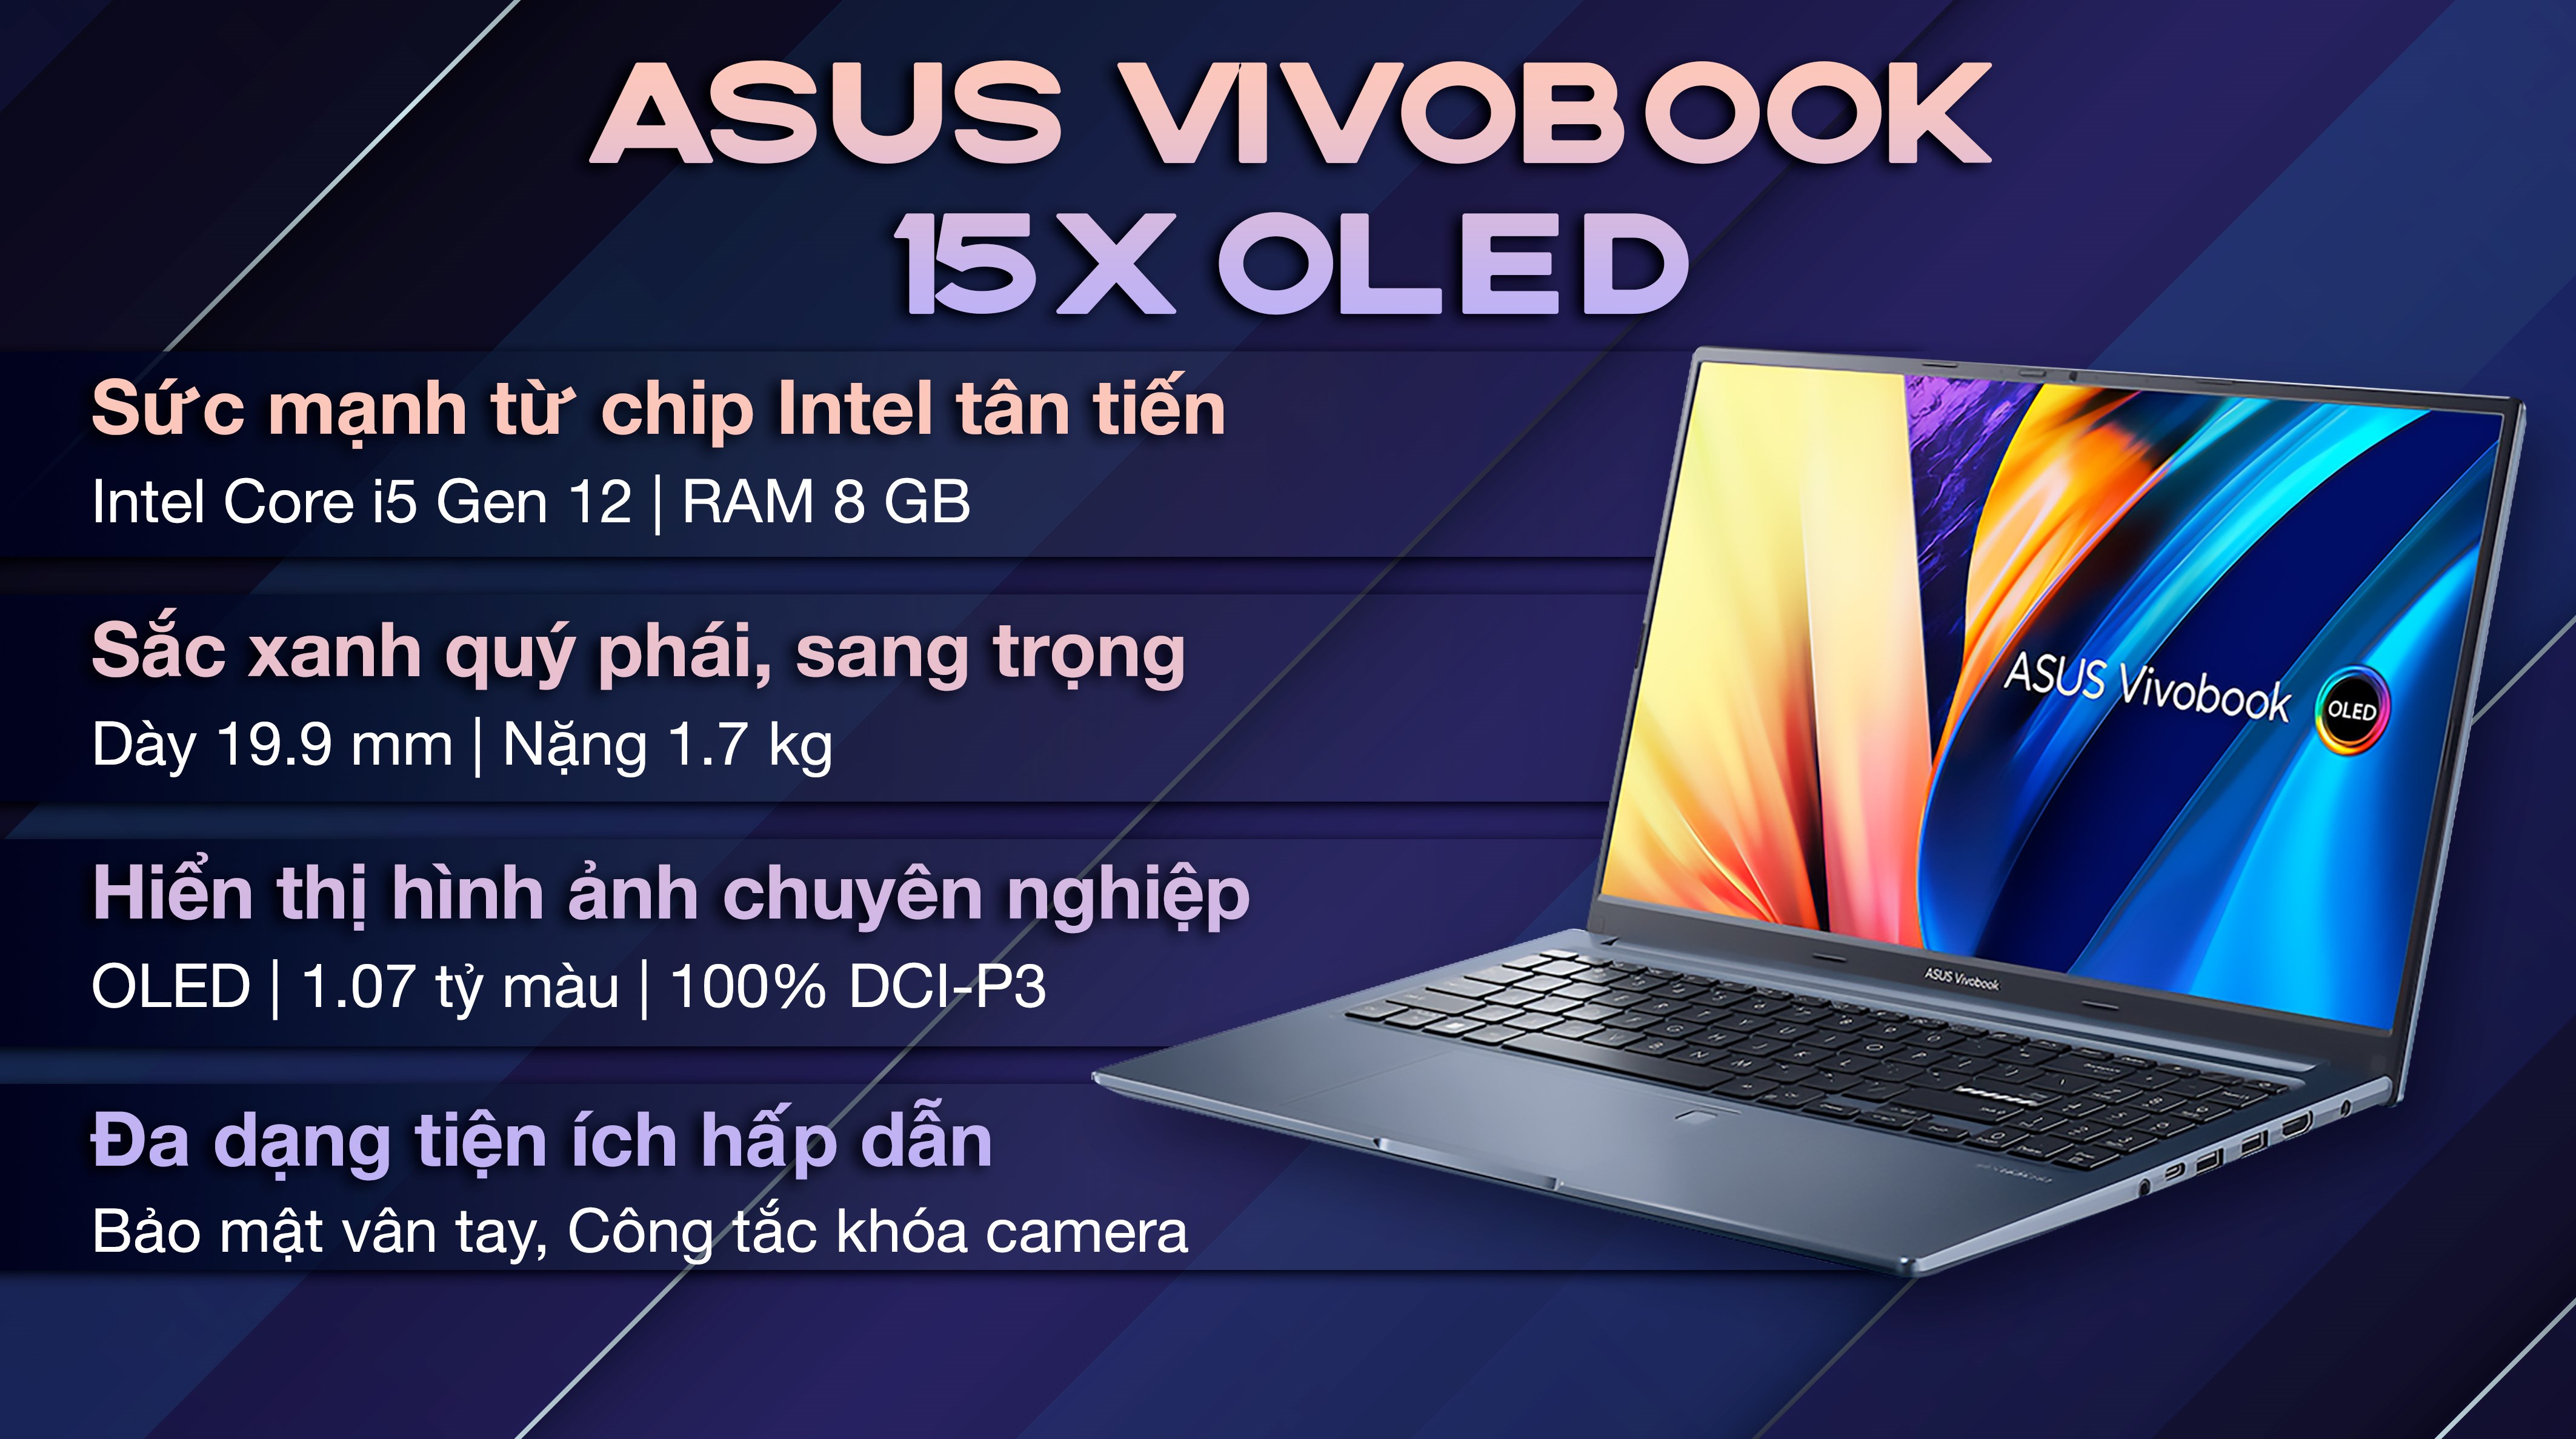 Asus VivoBook 15X sẽ mang đến cho bạn hình ảnh chi tiết về chiếc laptop mạnh mẽ và thiết kế sang trọng này, đáp ứng tất cả các nhu cầu của bạn trong công việc và giải trí.